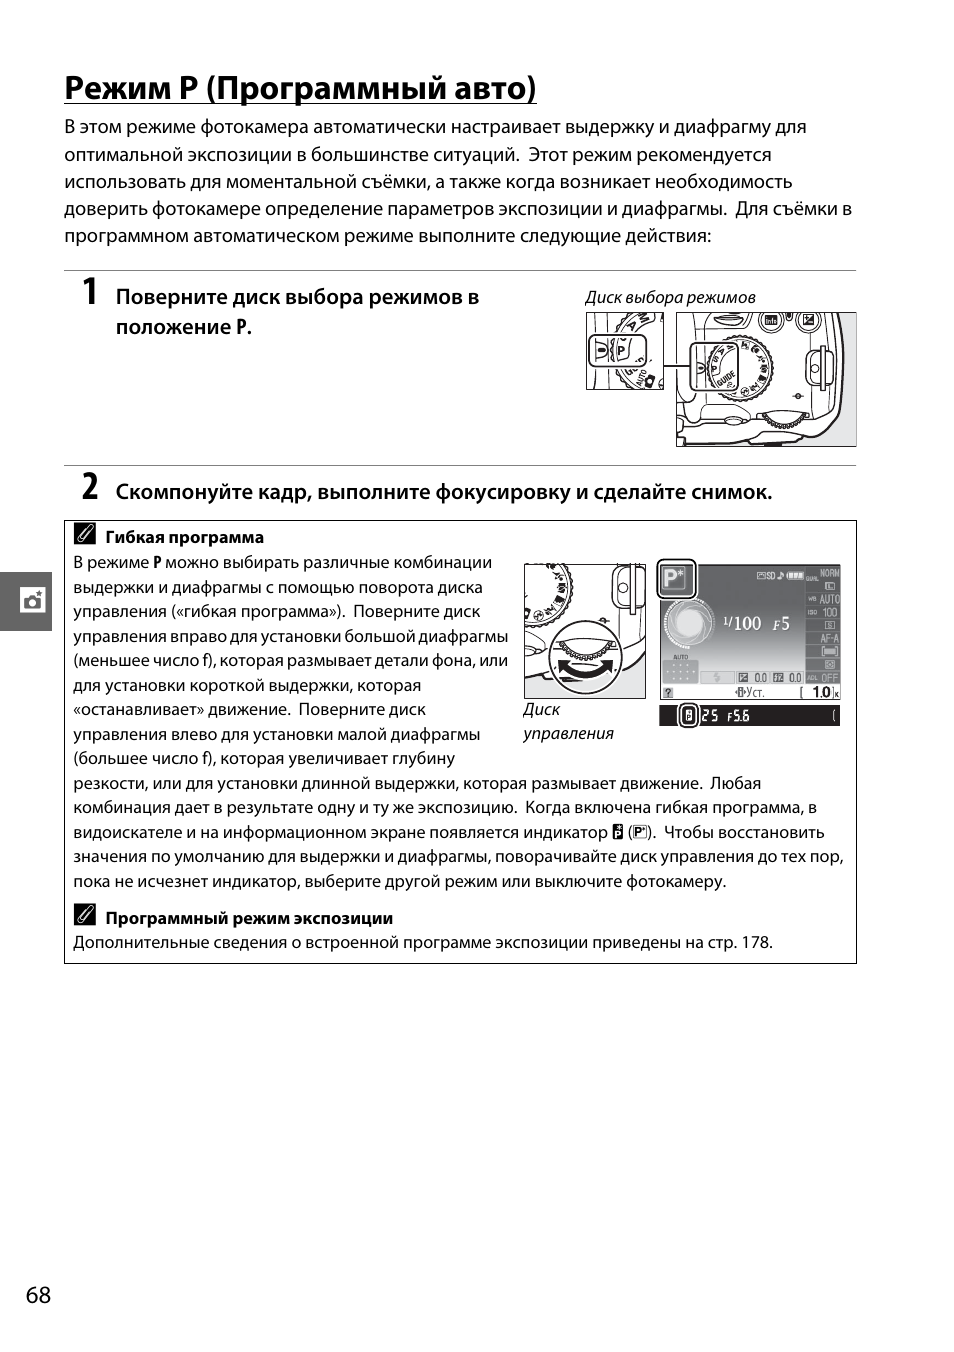 Режим p (программный авто) | Инструкция по эксплуатации Nikon D3000 | Страница 86 / 216